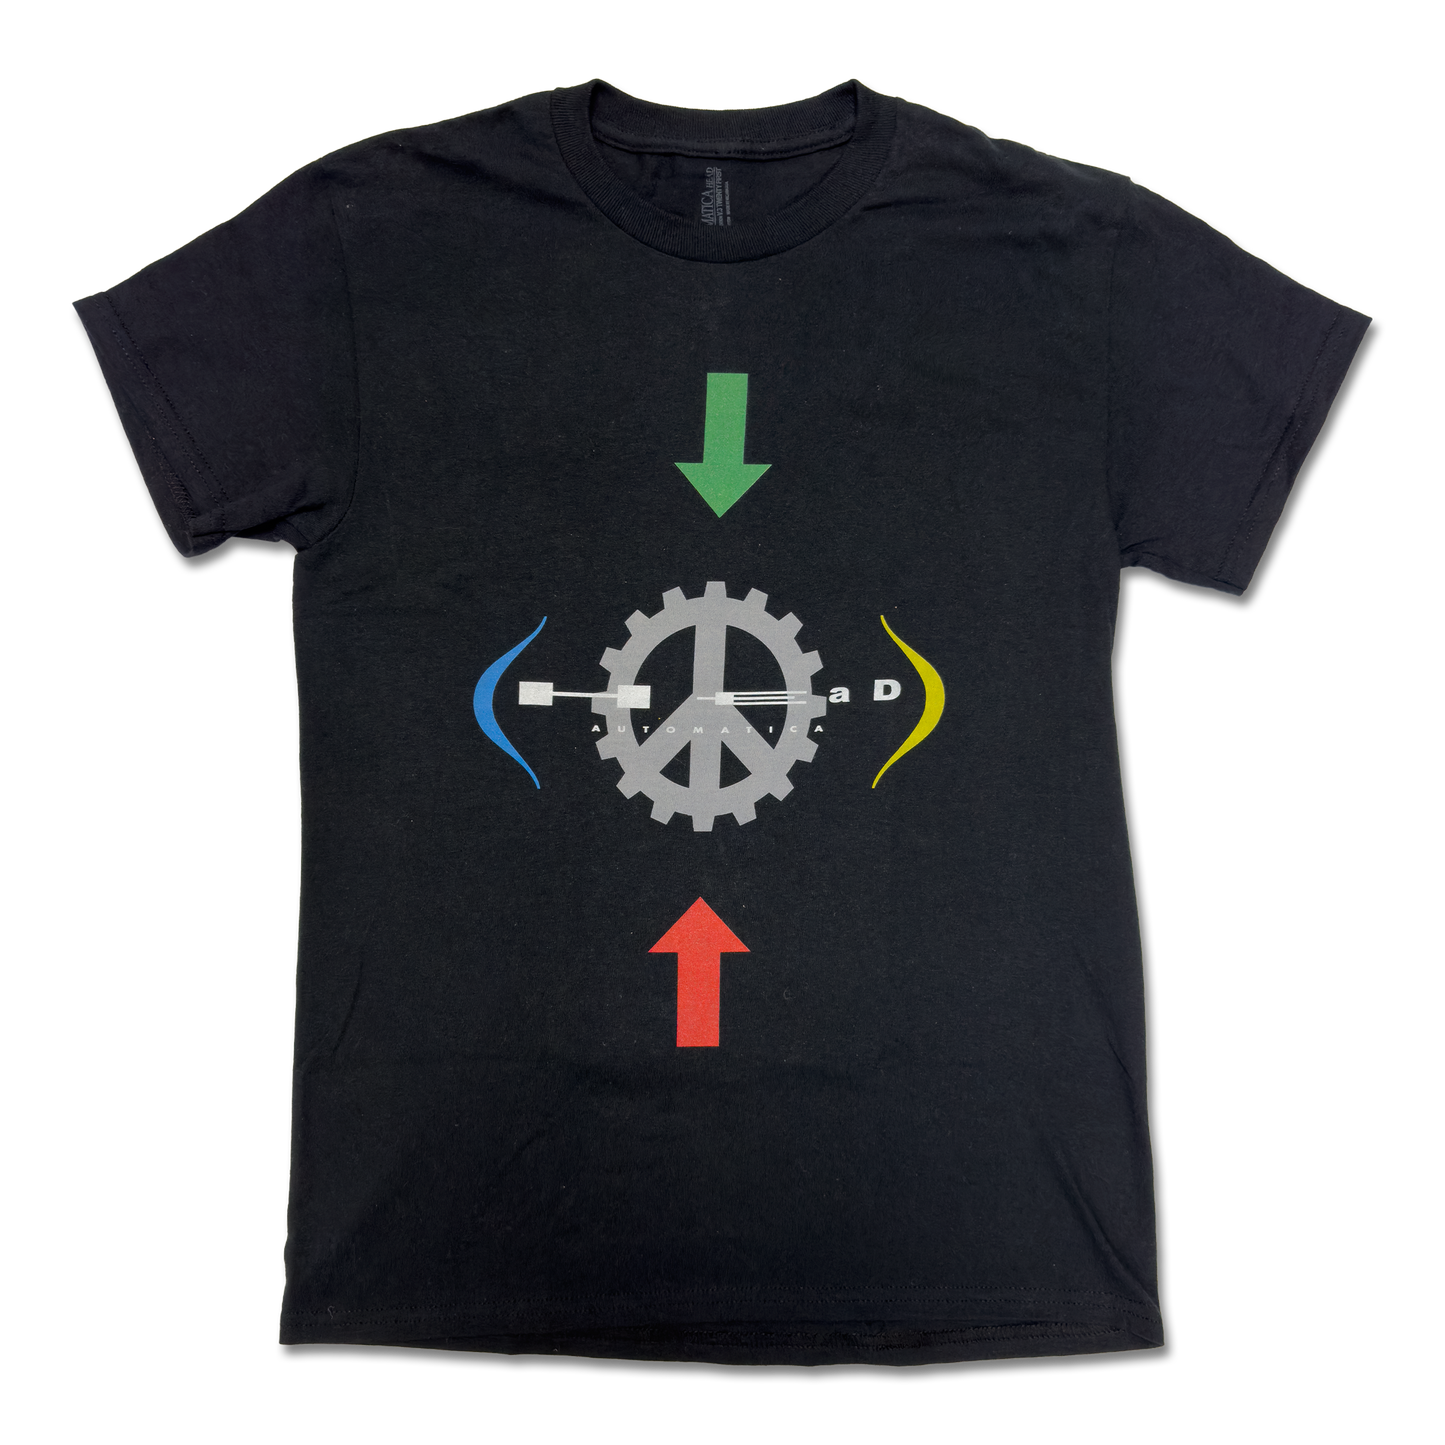 Zen Gear T-Shirt (Black)